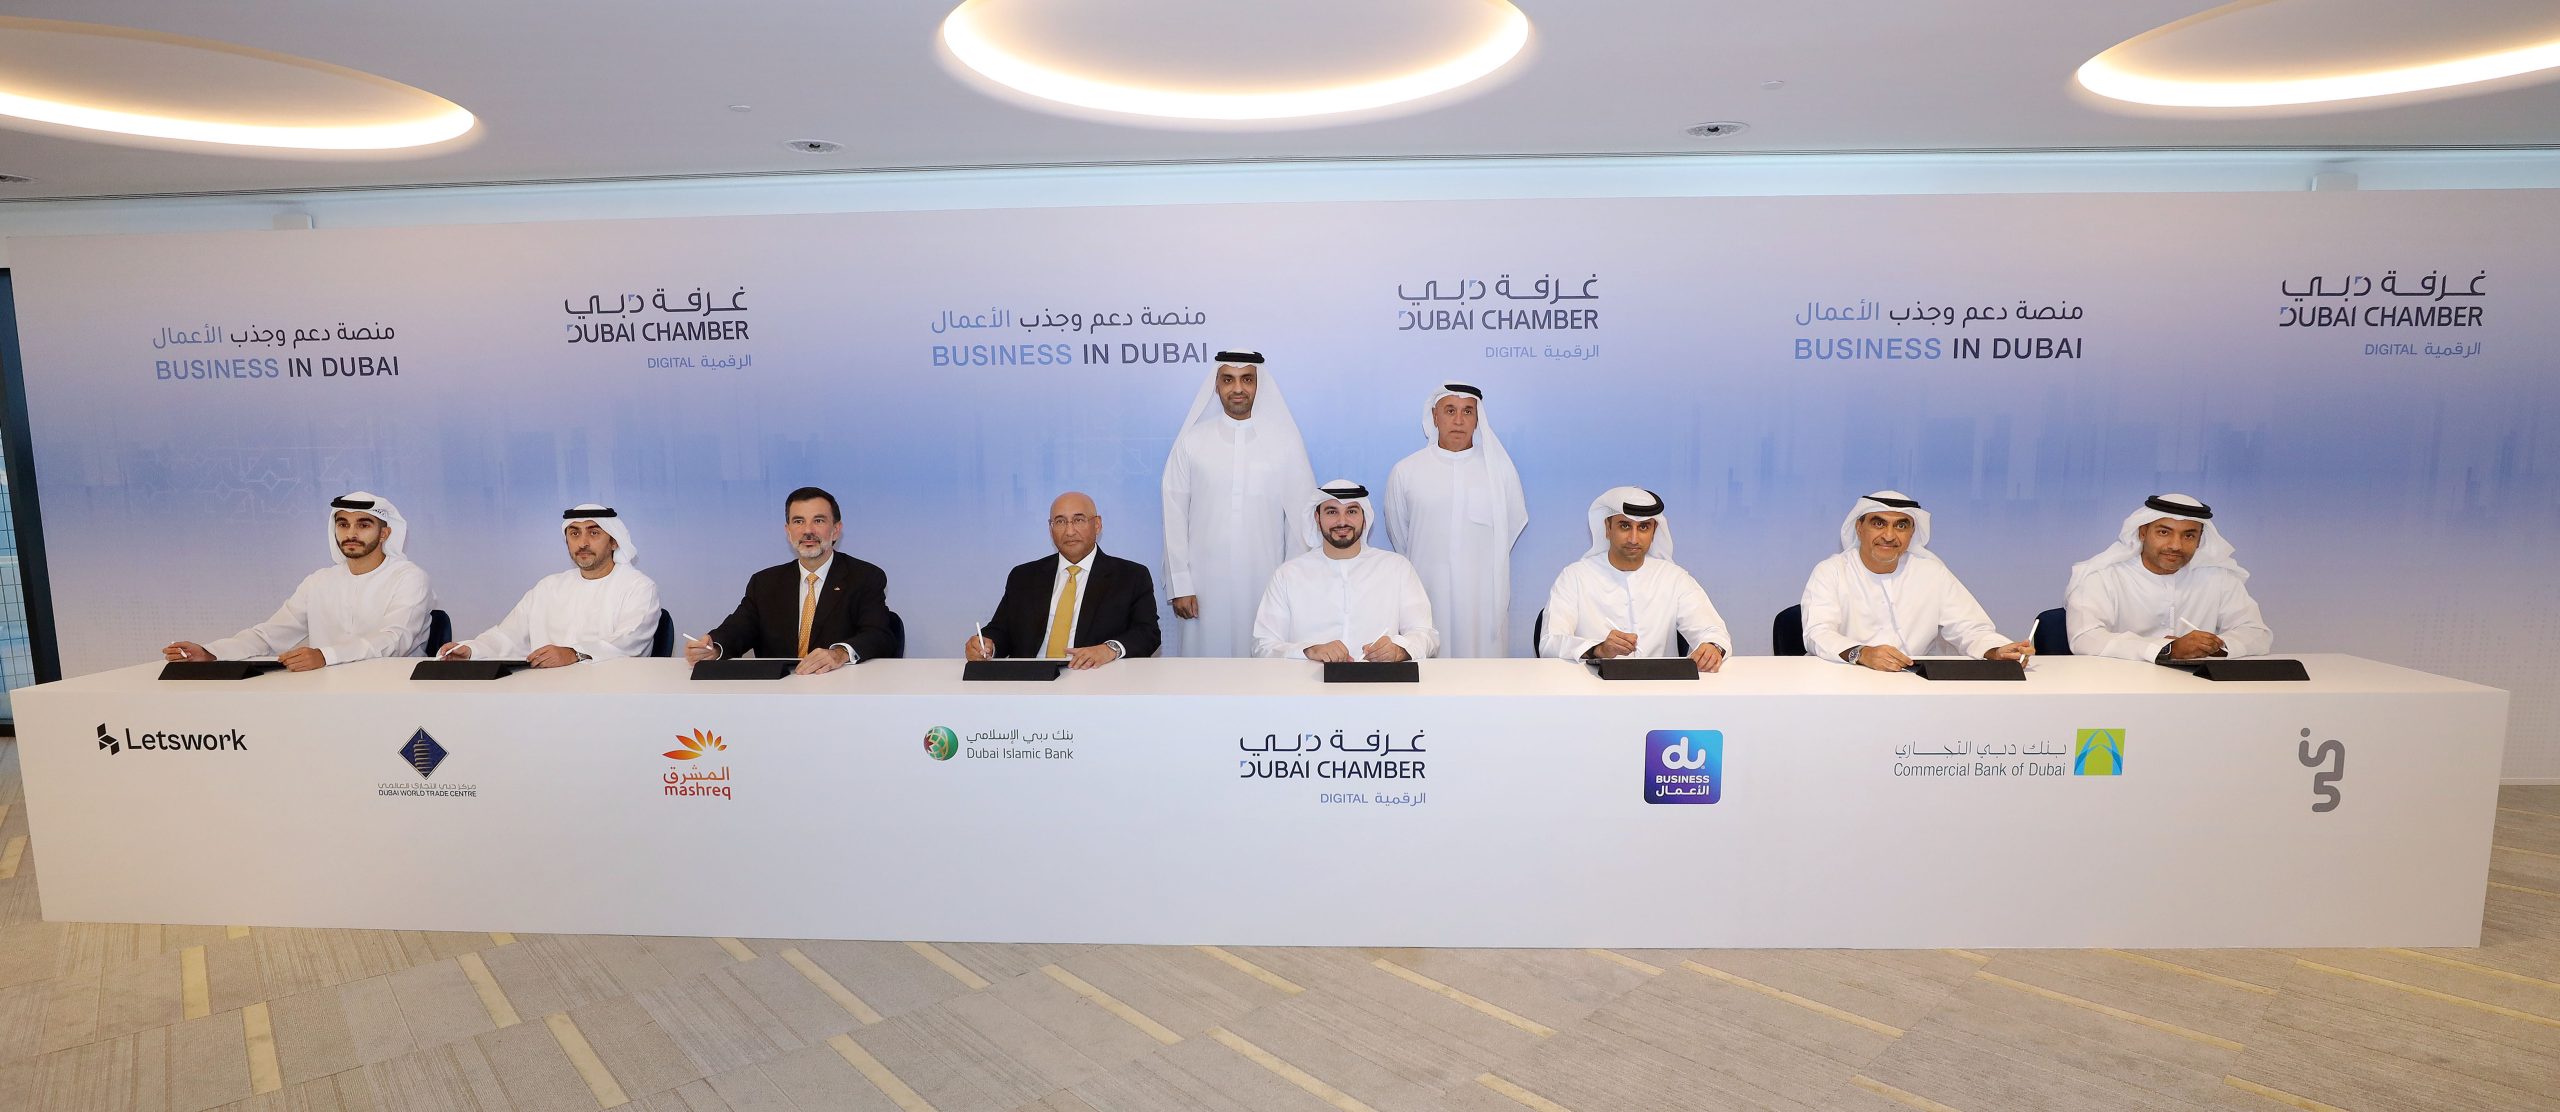 غرفة دبي للاقتصاد الرقمي تطلق “منصة دعم وجذب الشركات” لمواكبة أجندة دبي الاقتصادية وترسيخ ريادة منظومة دبي الرقمية